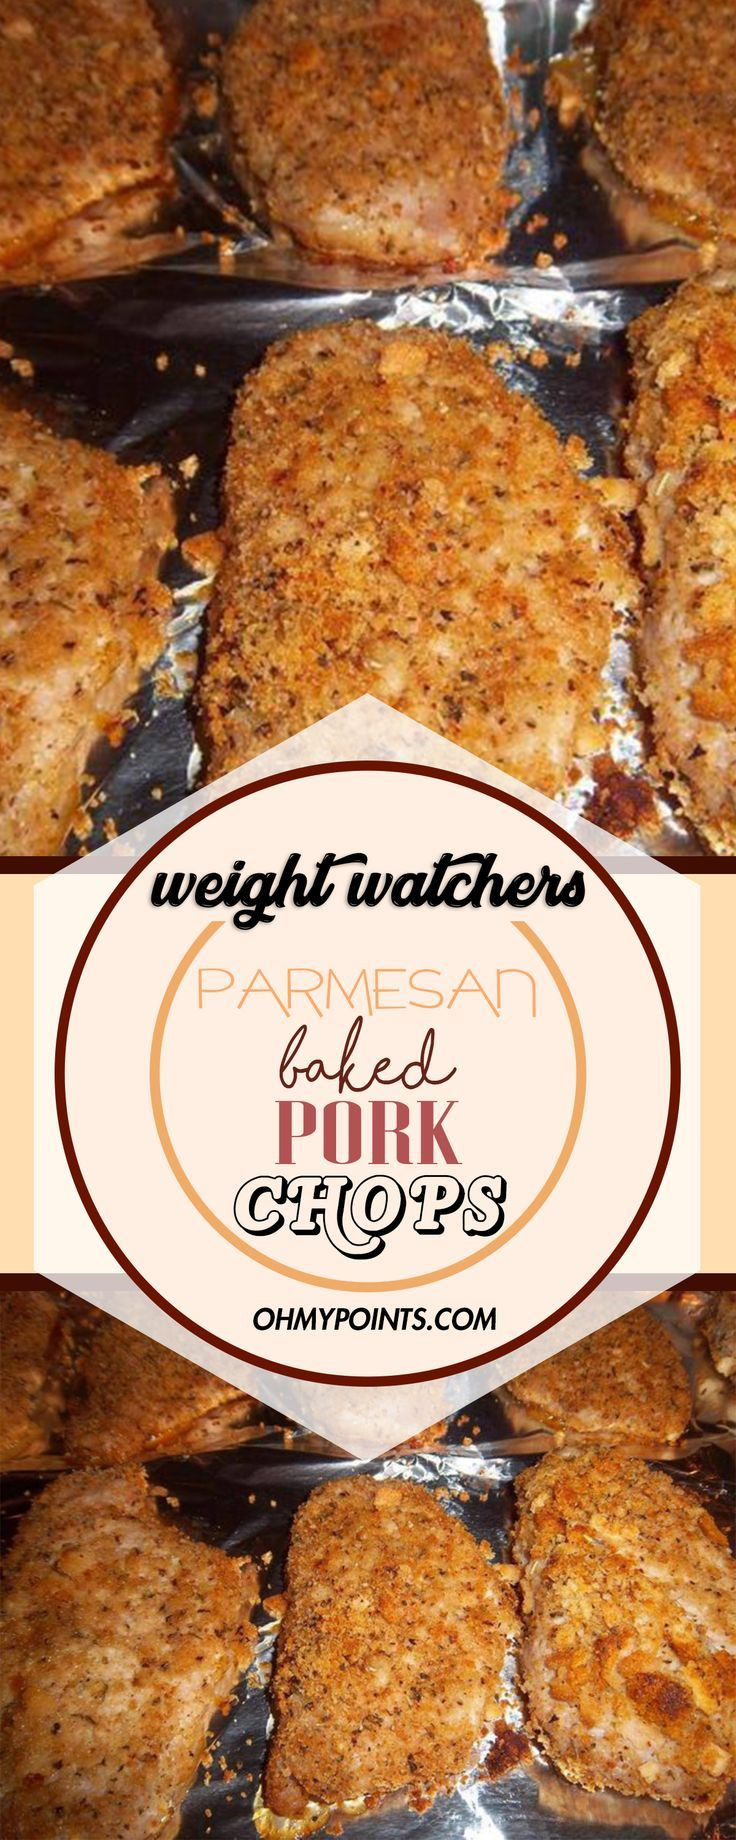 Low Calorie Pork Chop Recipes
 Parmesan Baked Pork Chops